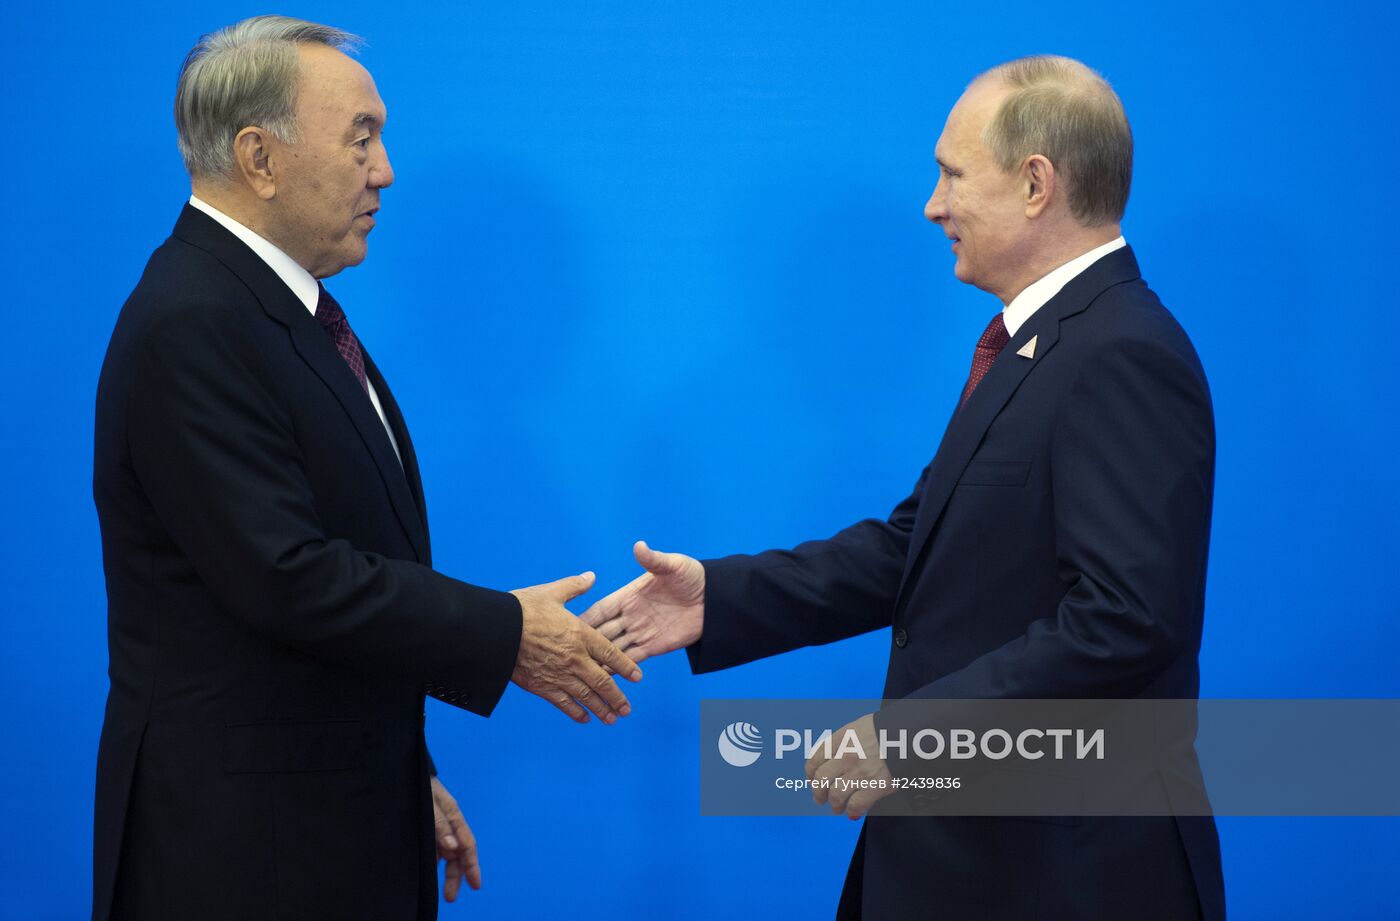 Рабочий визит В.Путина в Астану для участия в заседании ВЕЭС